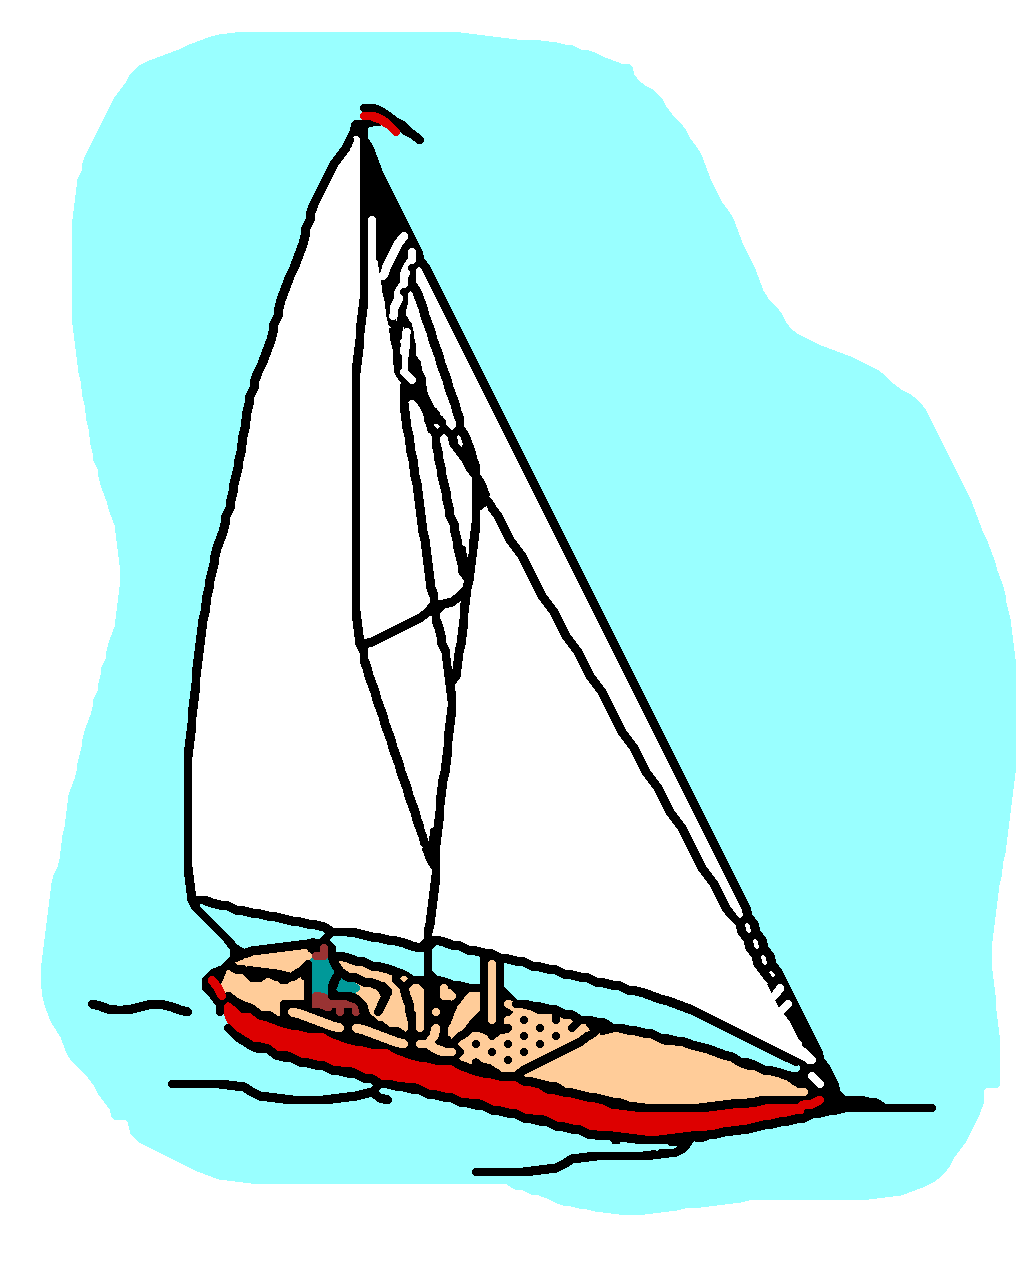 yacht images clip art - photo #44